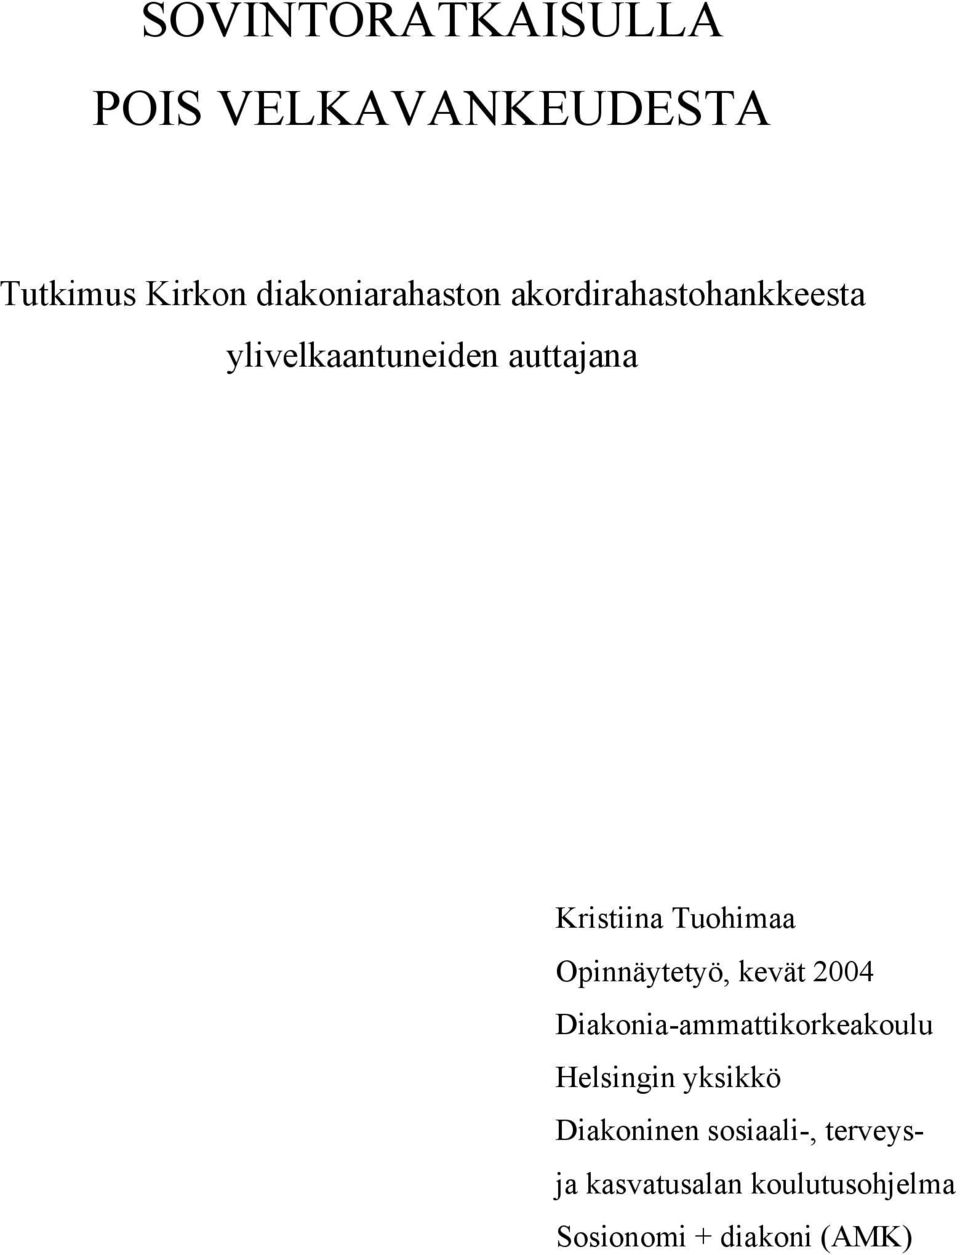 Opinnäytetyö, kevät 2004 Diakonia-ammattikorkeakoulu Helsingin yksikkö